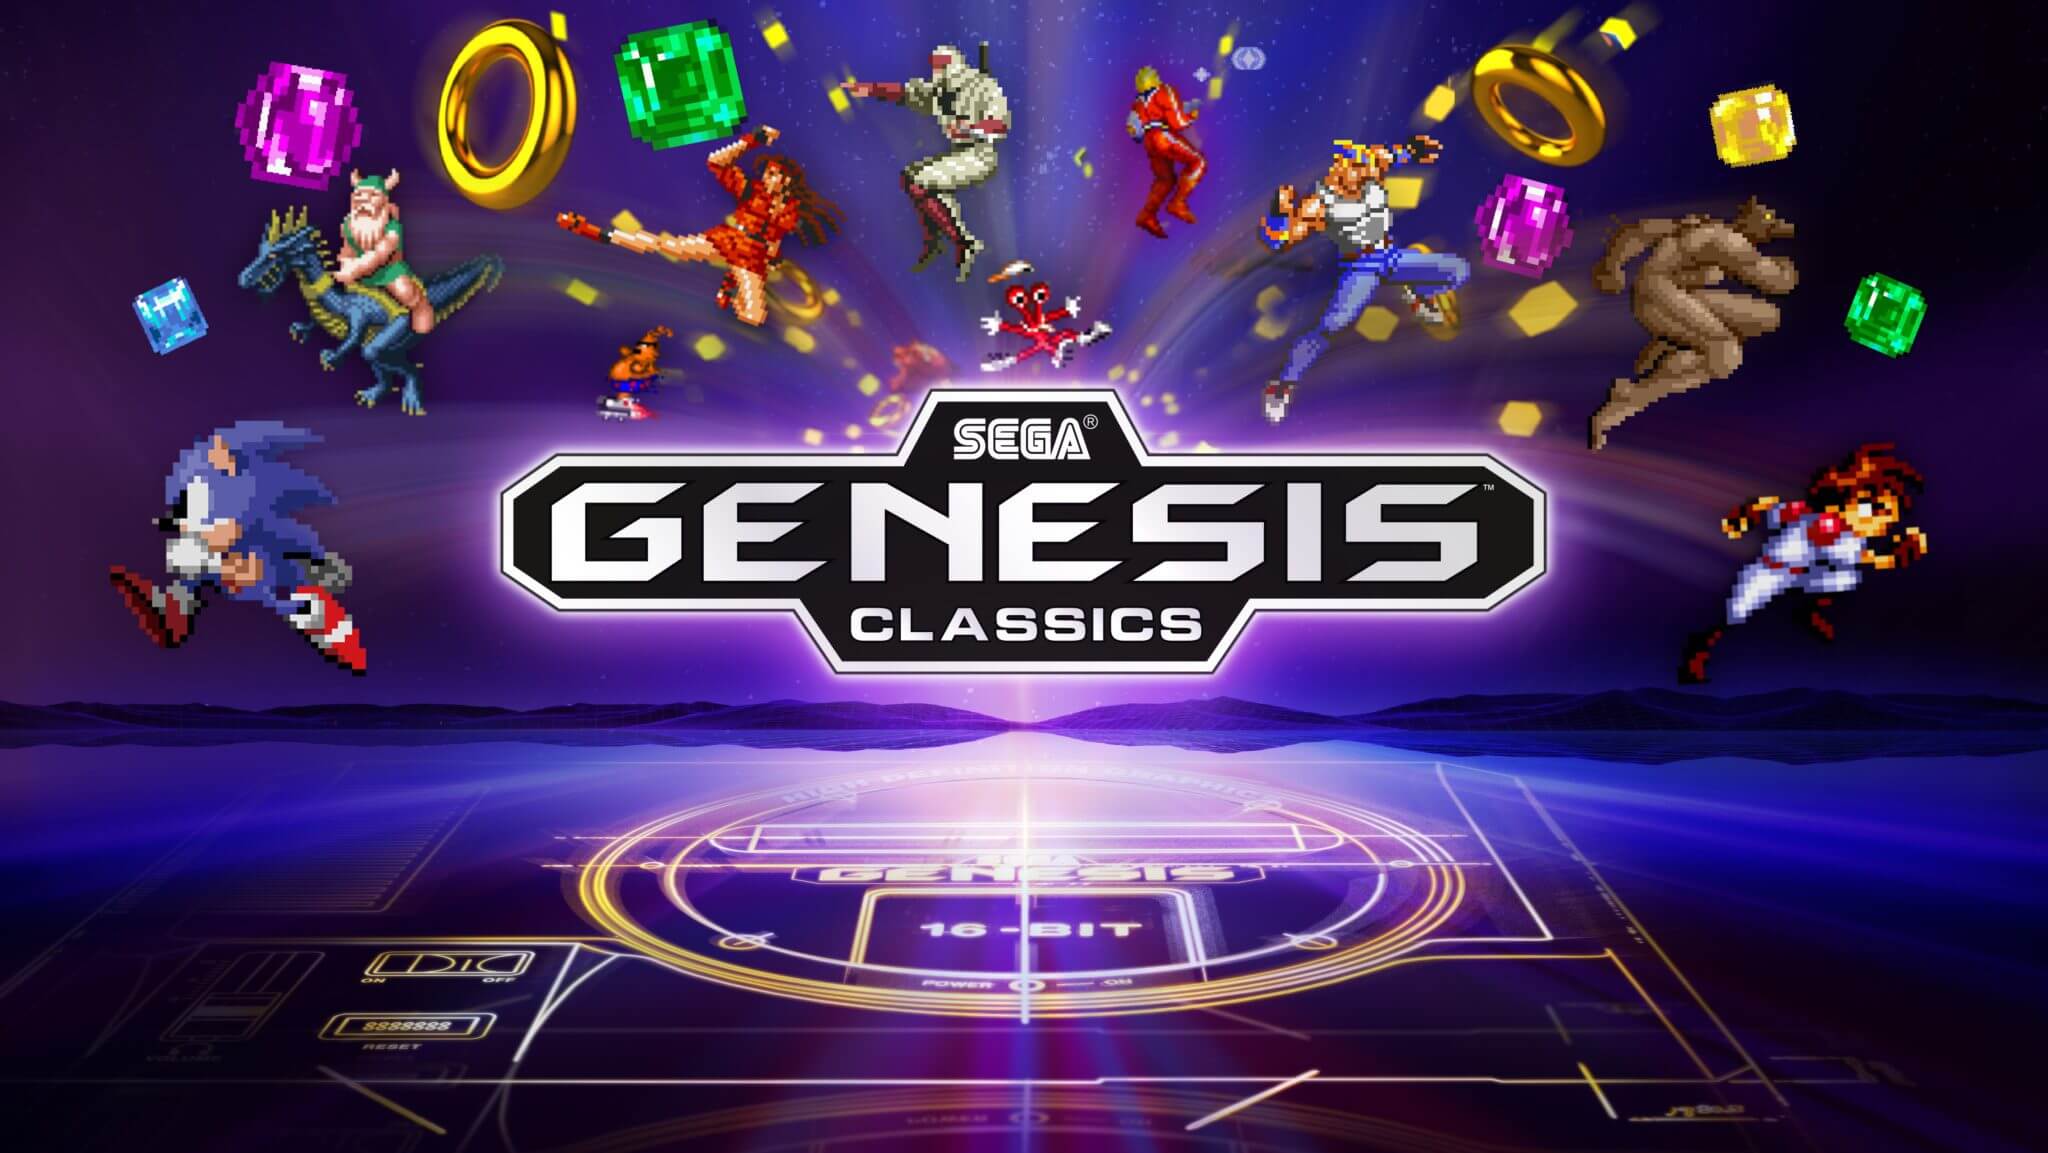 download sega genesis classics for free